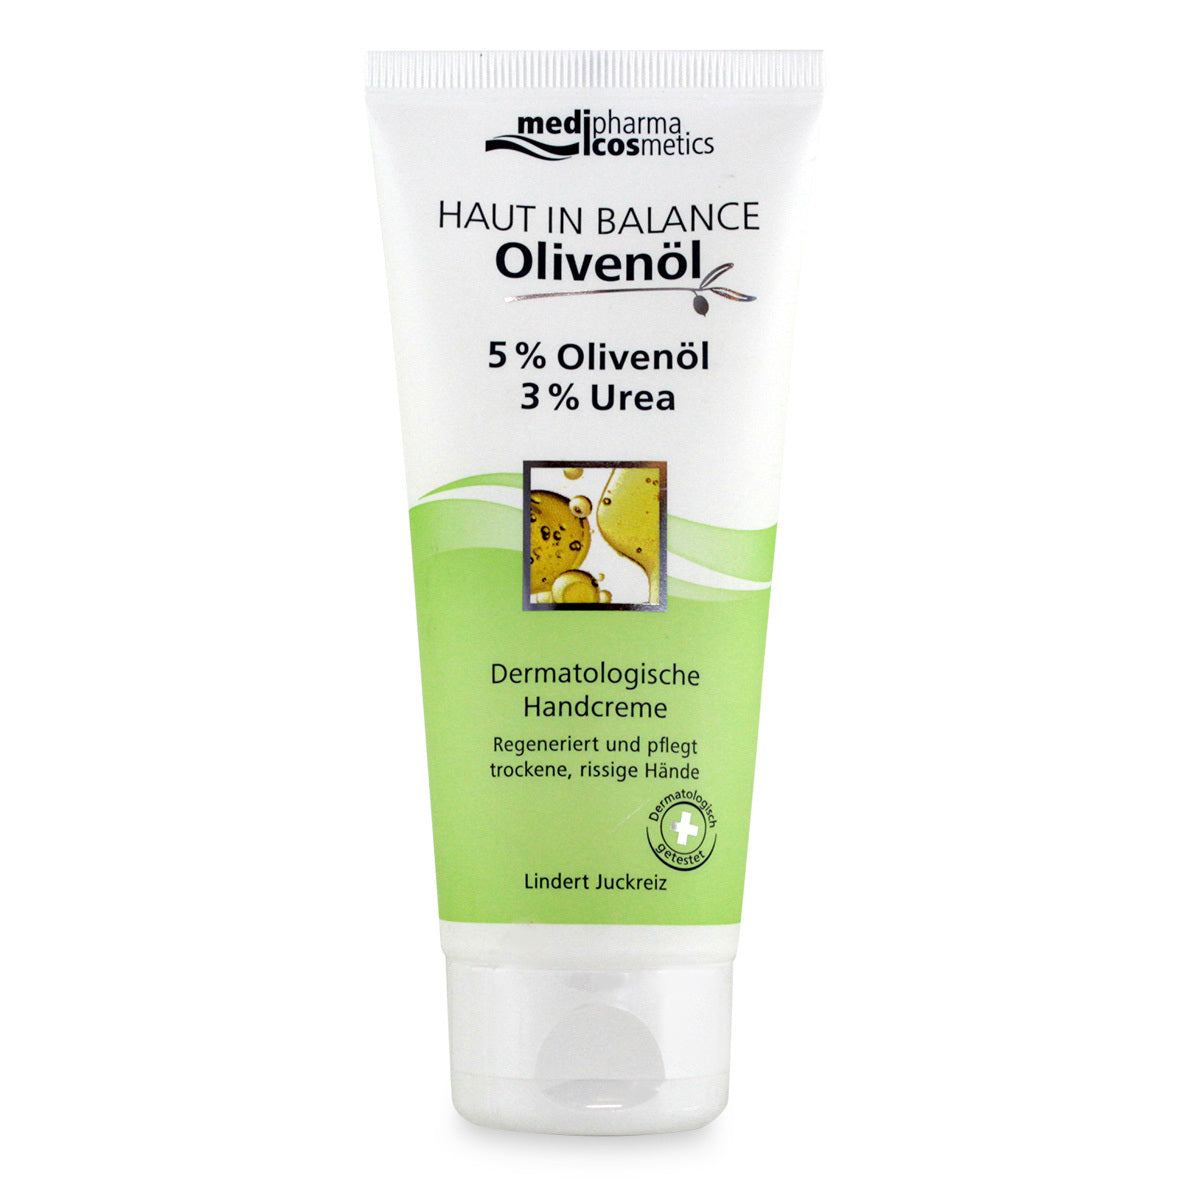 Primary image of Olivenol Haut In Balance Olive Oil + Urea Hand Cream